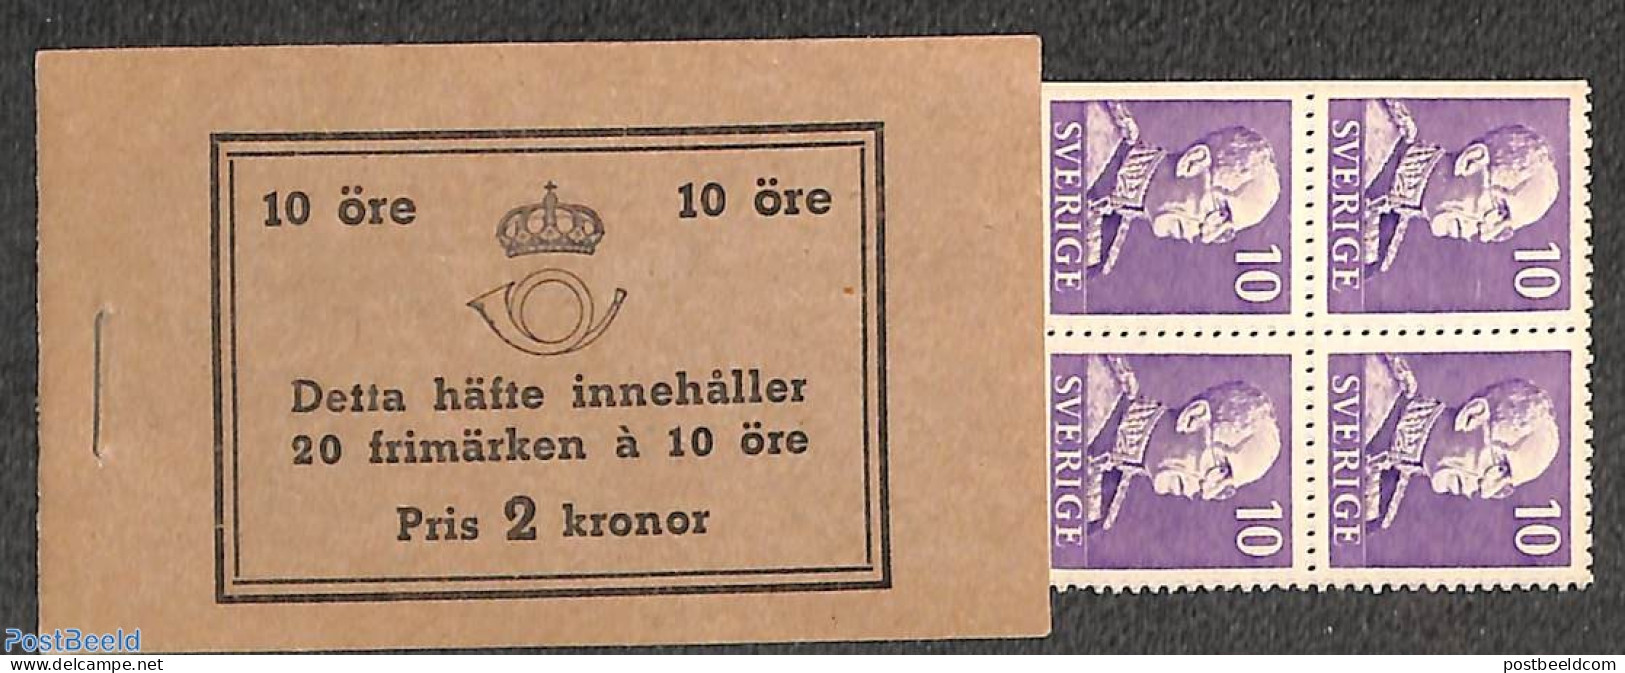 Sweden 1939 Definitives Booklet (B/D Perf.), Mint NH, Stamp Booklets - Ongebruikt